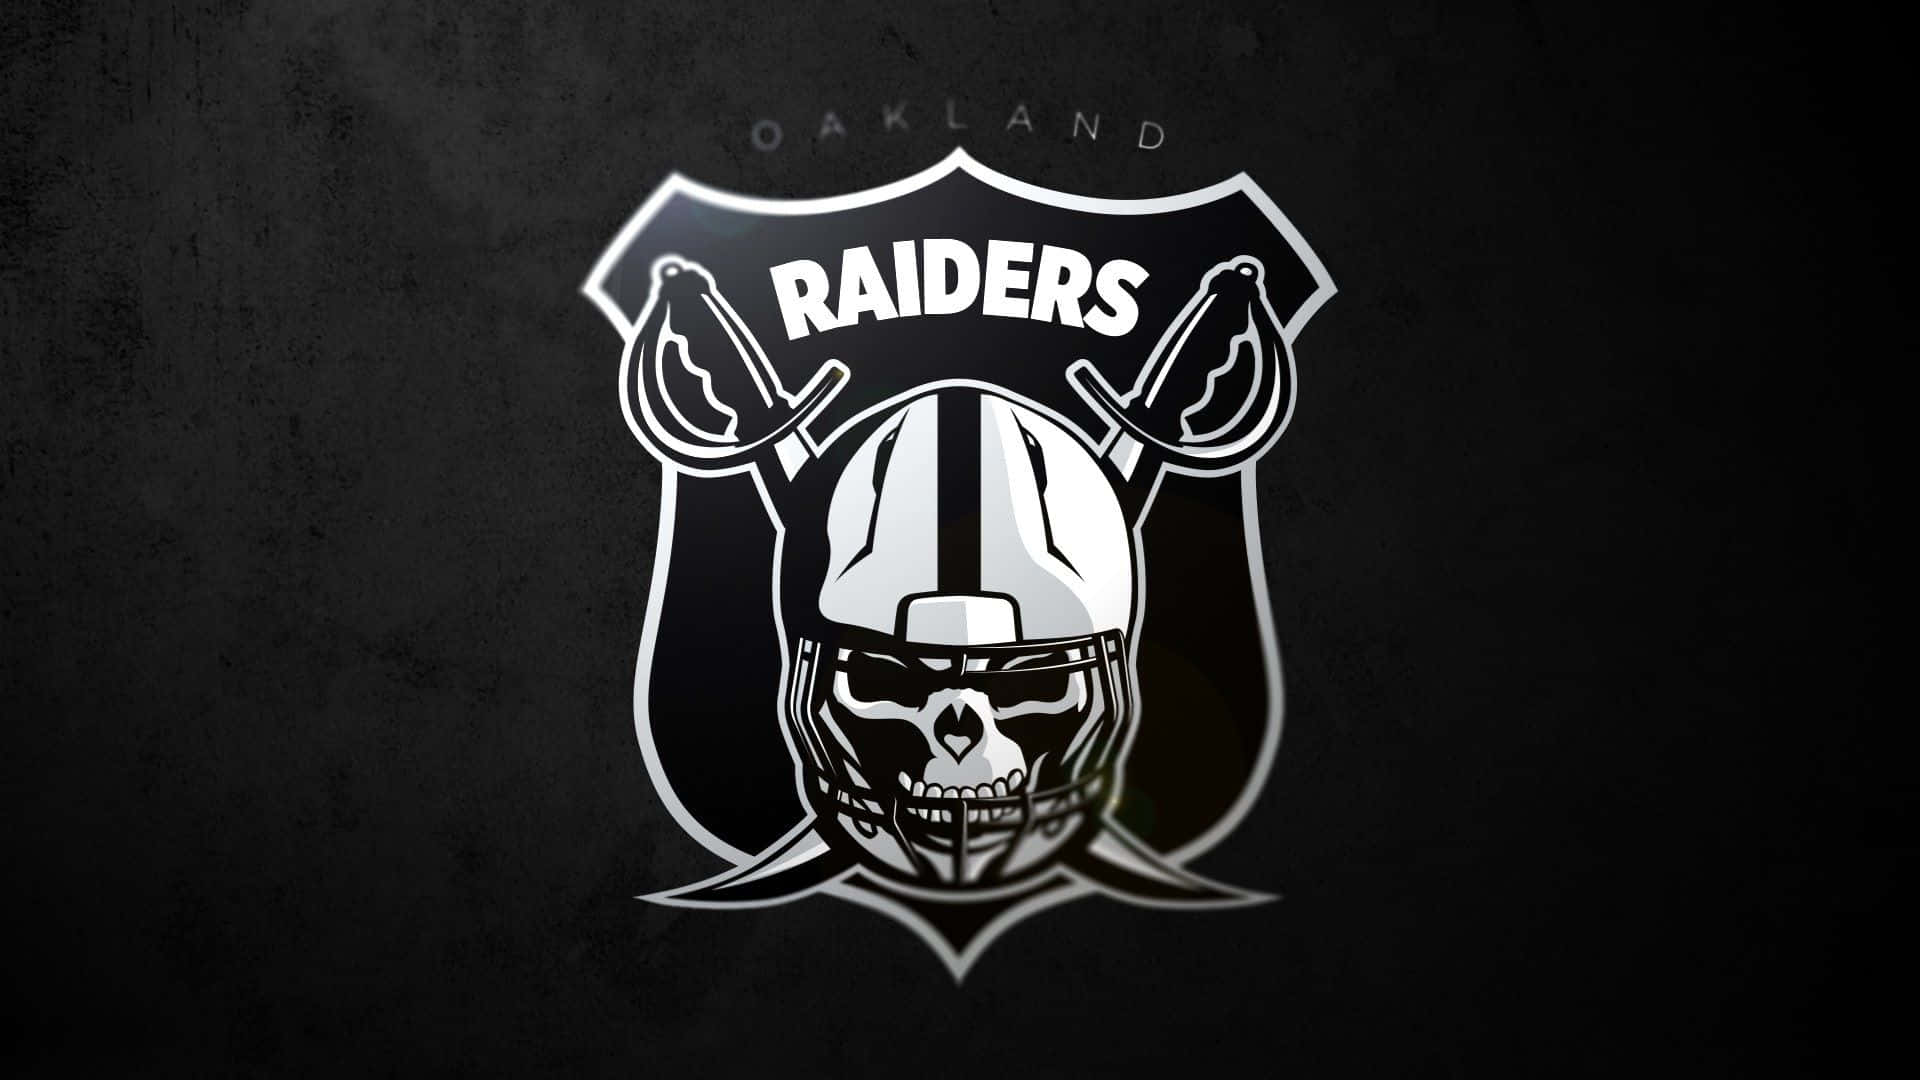 Logotipode Los Raiders En Color Plateado Y Negro Con Letras Blancas. Fondo de pantalla